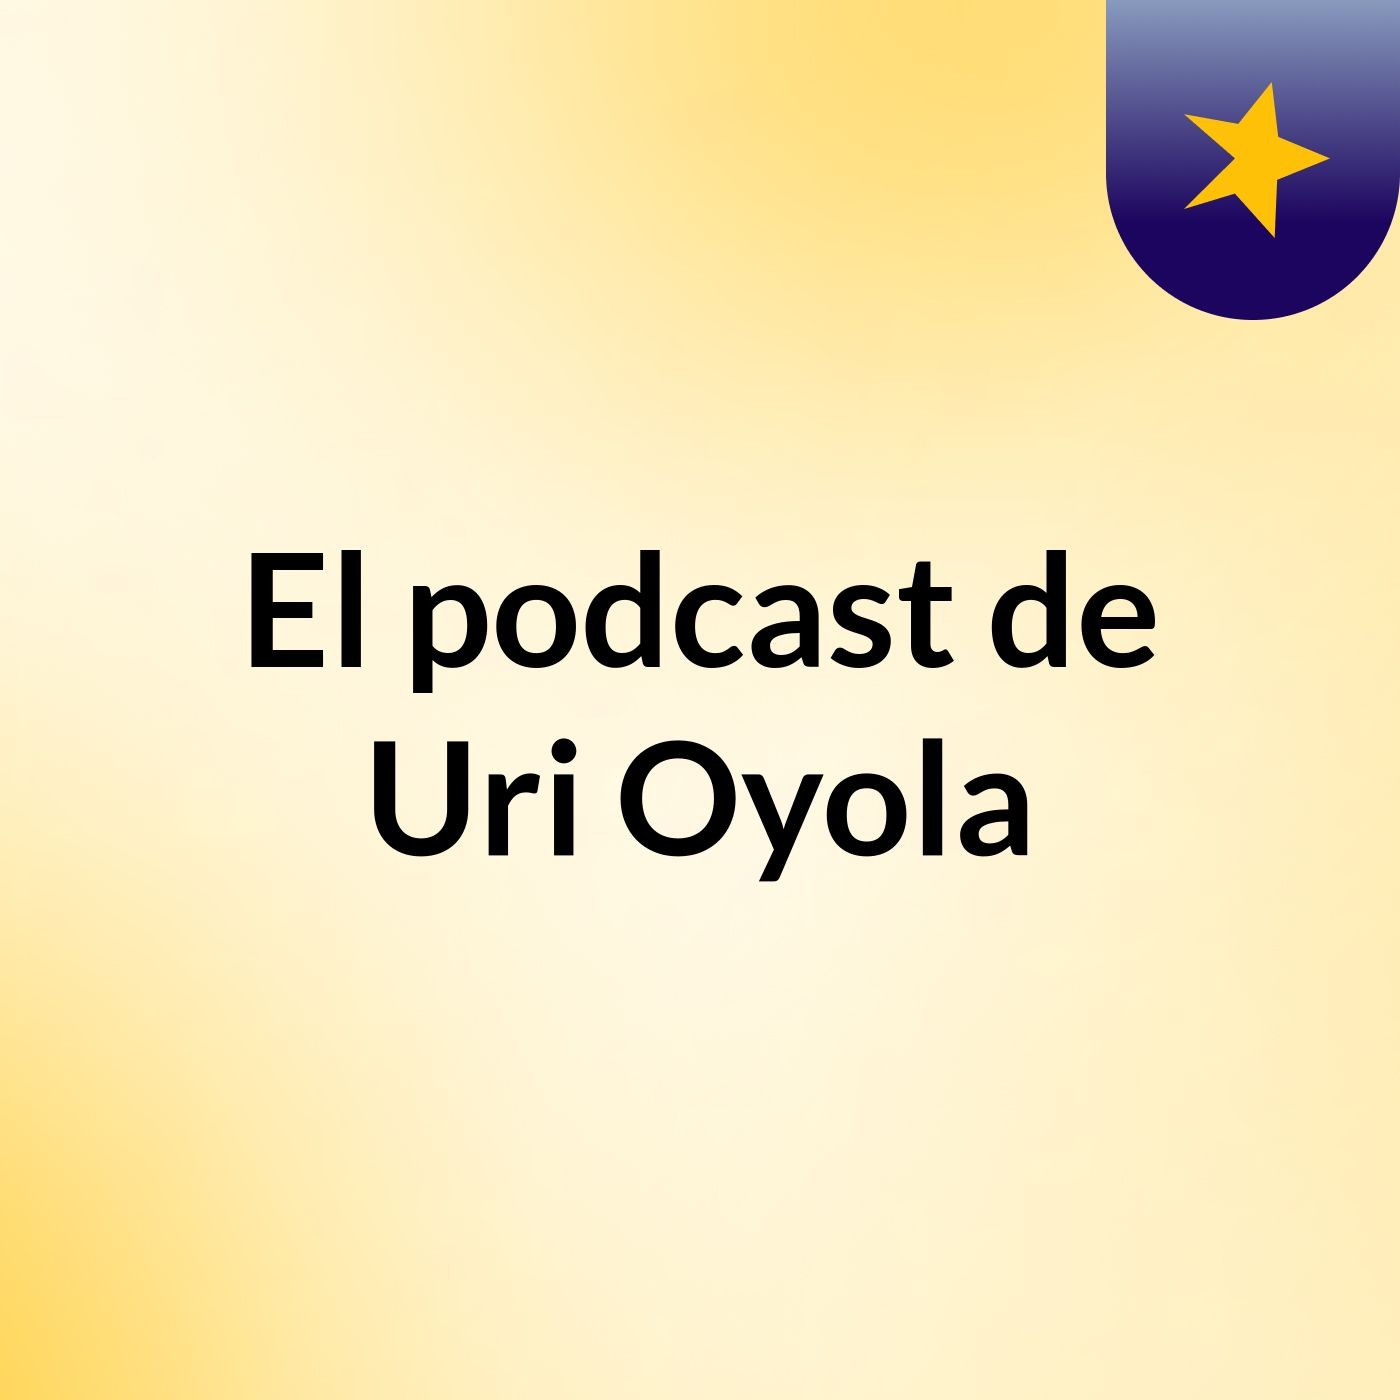 El podcast de Uri Oyola